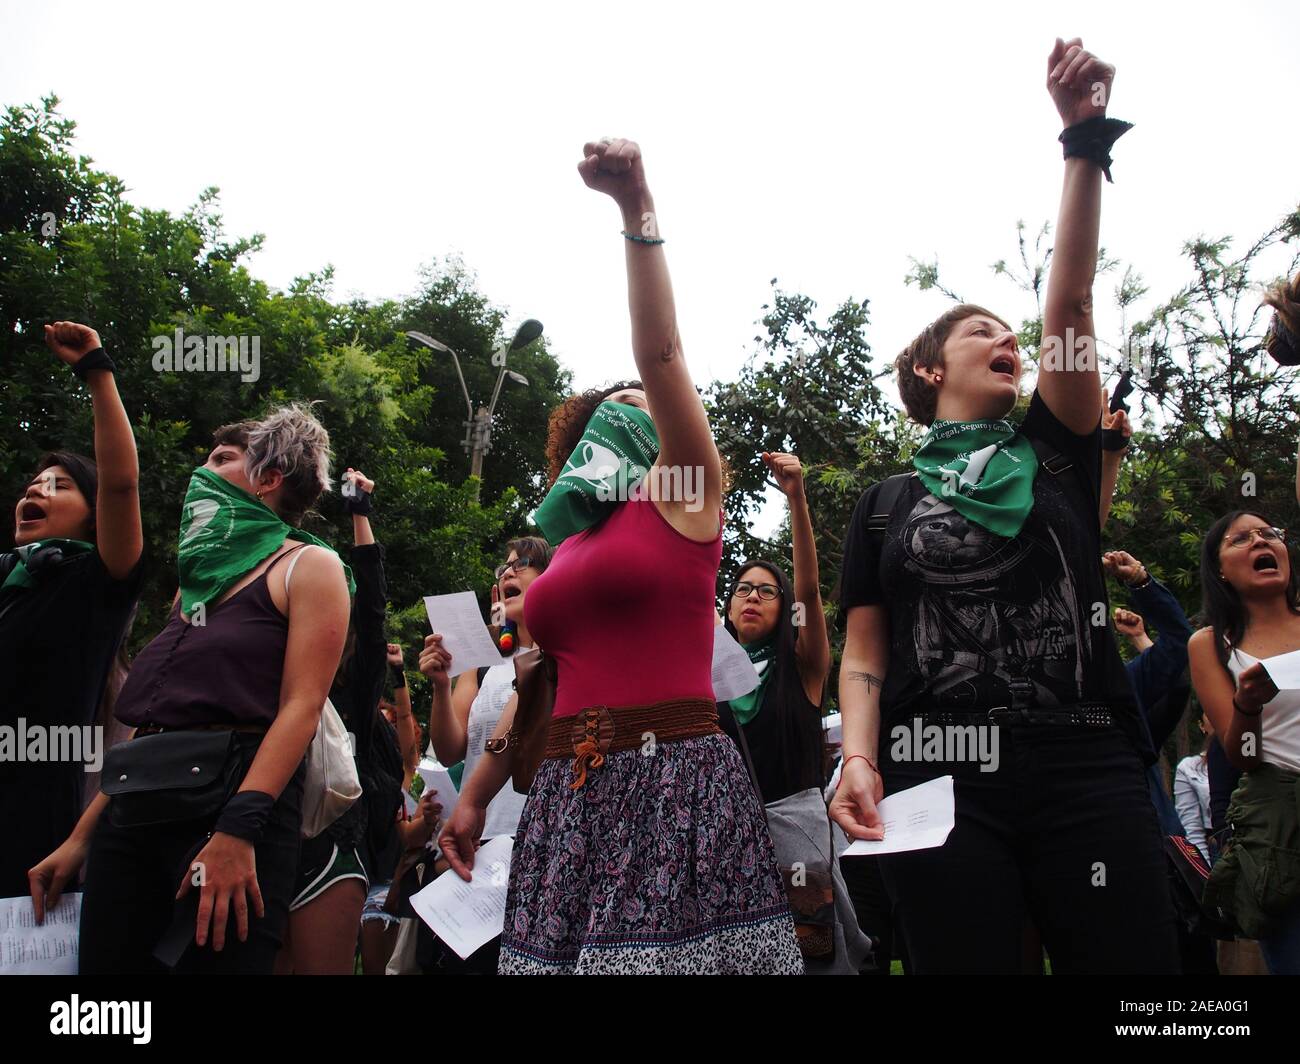 Mujeres manifestantes que llevaban pañuelos verdes actuando en una  feminista 'flash mob un violador en tu camino" (en español "un violador en  tu camino') en protesta por la violencia contra la mujer.